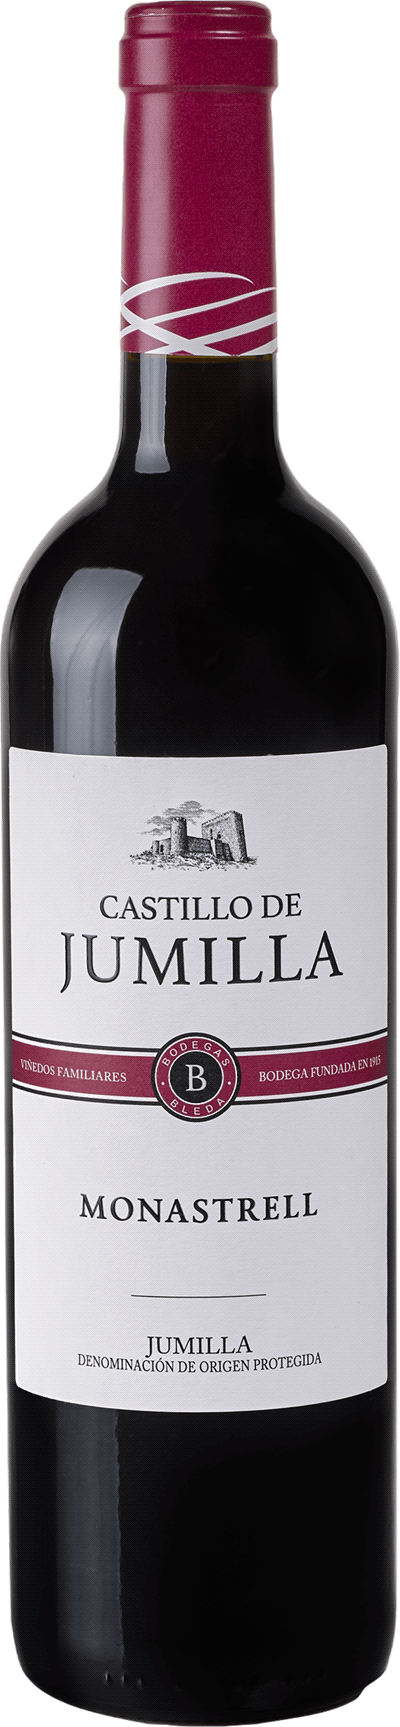 Bodegas Bleda Castillo de Jumilla Monastrell